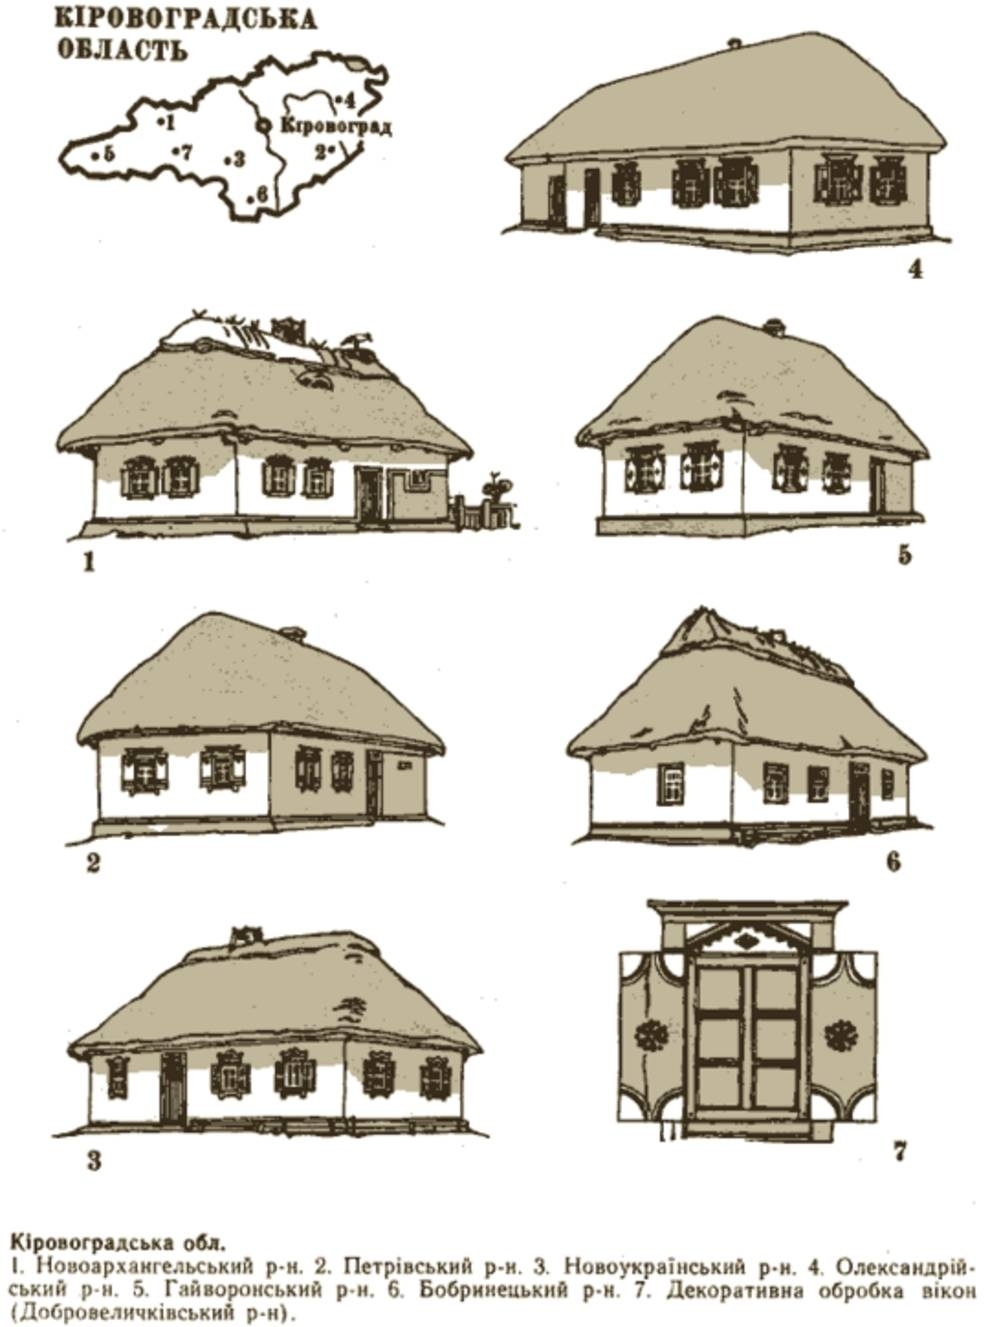 Схема хаты. Украинская хата рисунок. Хата Мазанка чертеж. Рисунок стиль народного жилища в архитектуре. Украинская хата схематичное изображение.